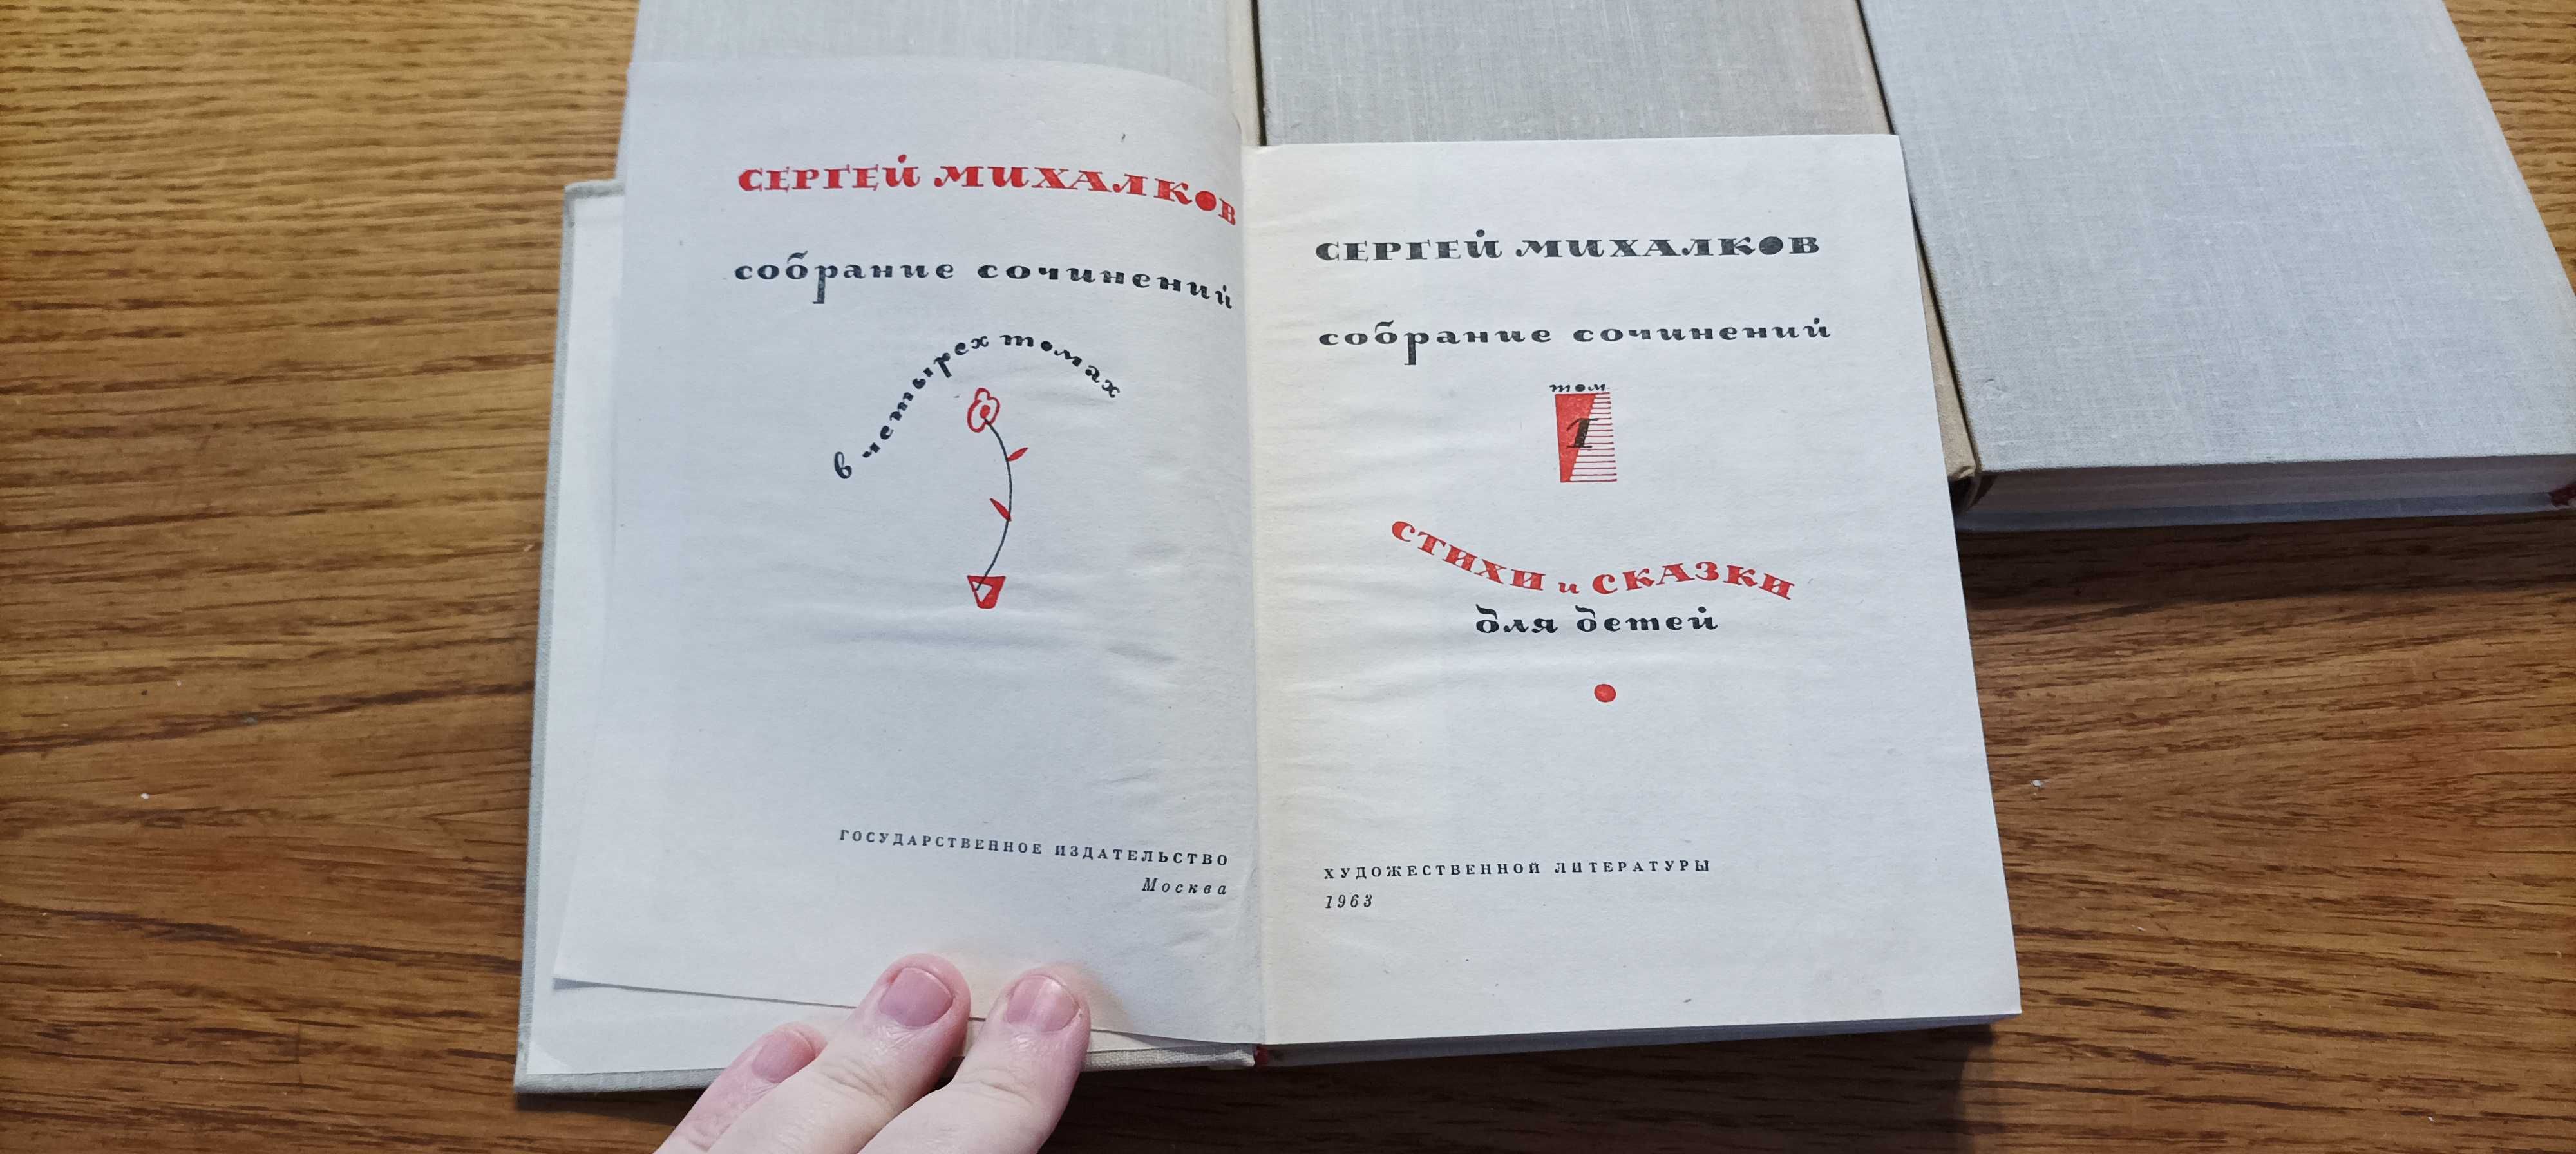 Михалков С. В. Собрание сочинений в 4 томах